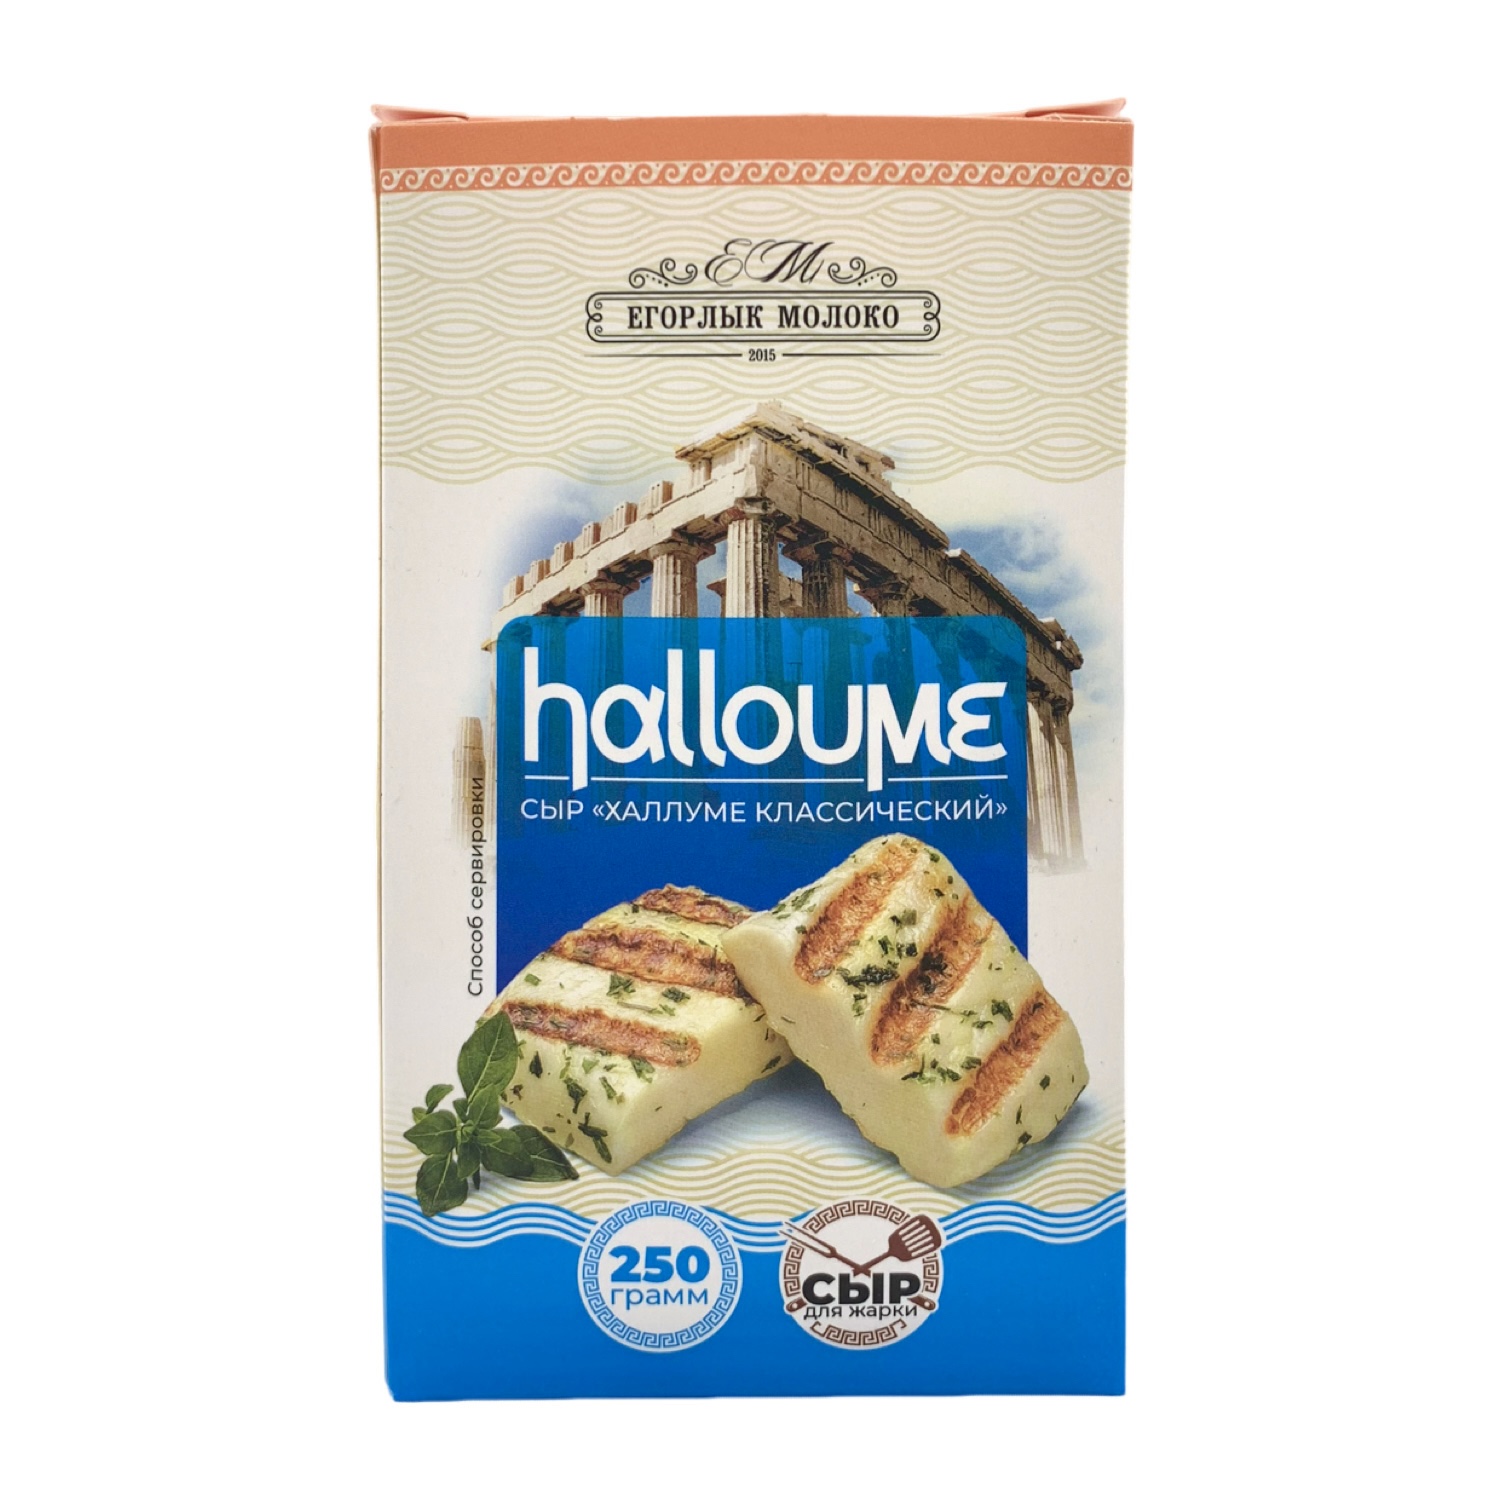 Сыр Халлуме классический 250 гр